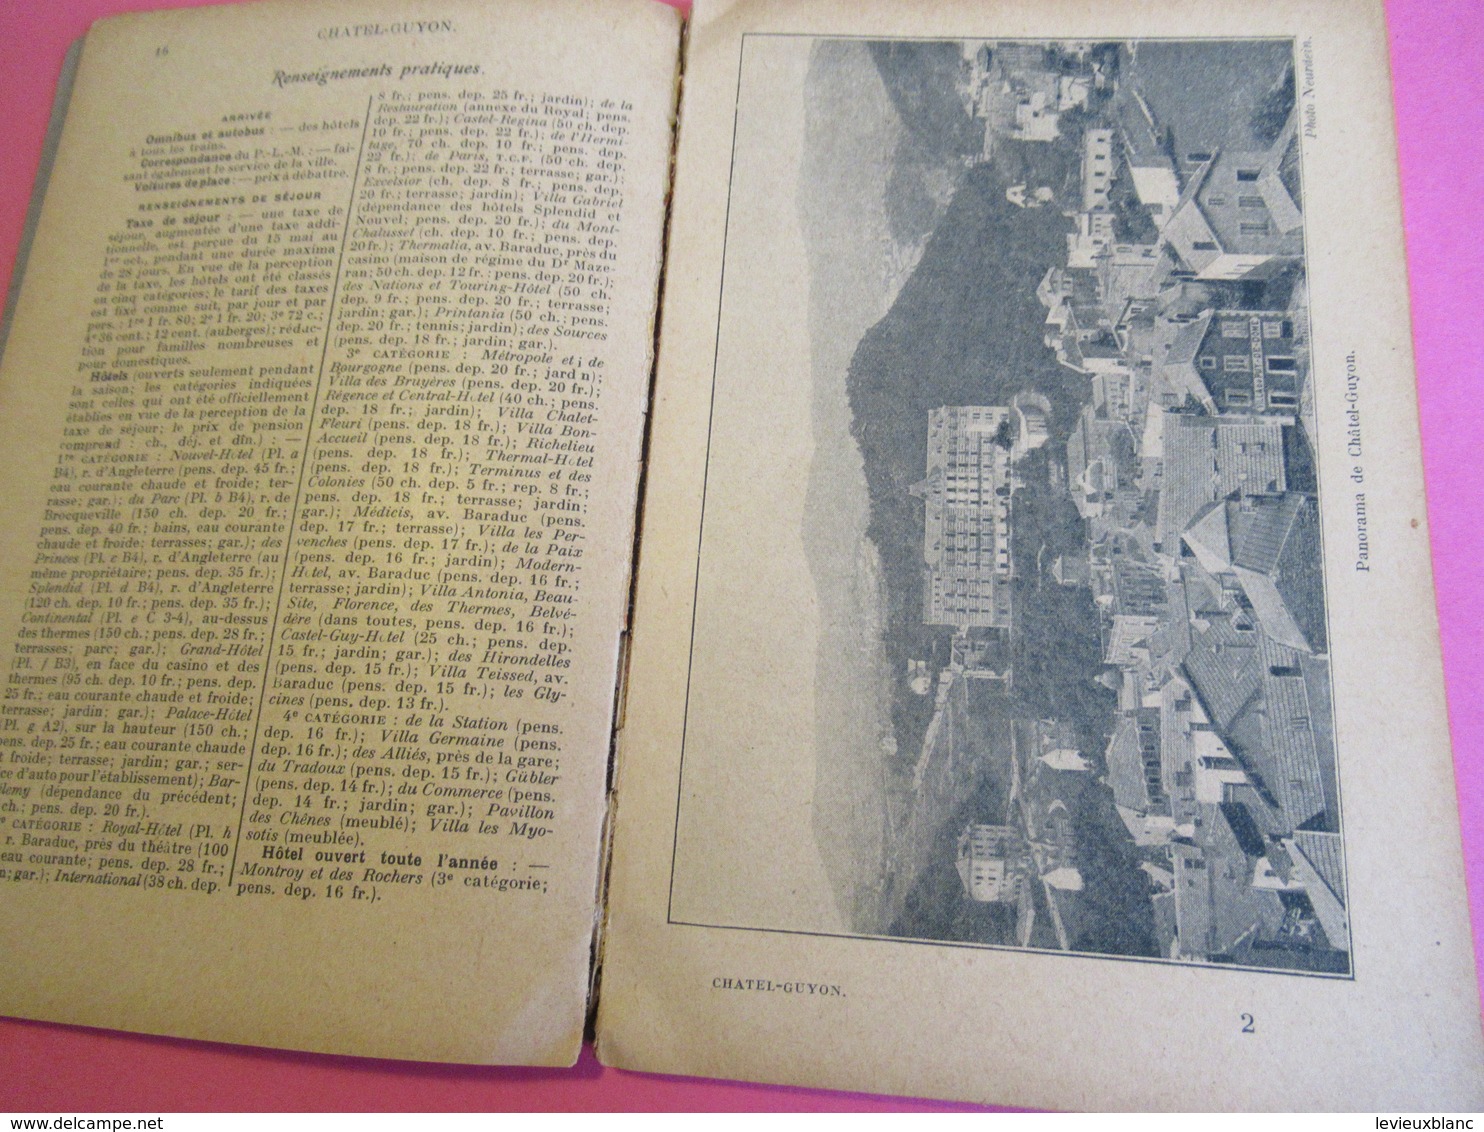 Les Guides Bleus Illustrés/CHATELGUYON Riom Montluçon Néris Evaux Chateauneuf/Librairie Hachette et Cie/1924      PGC273